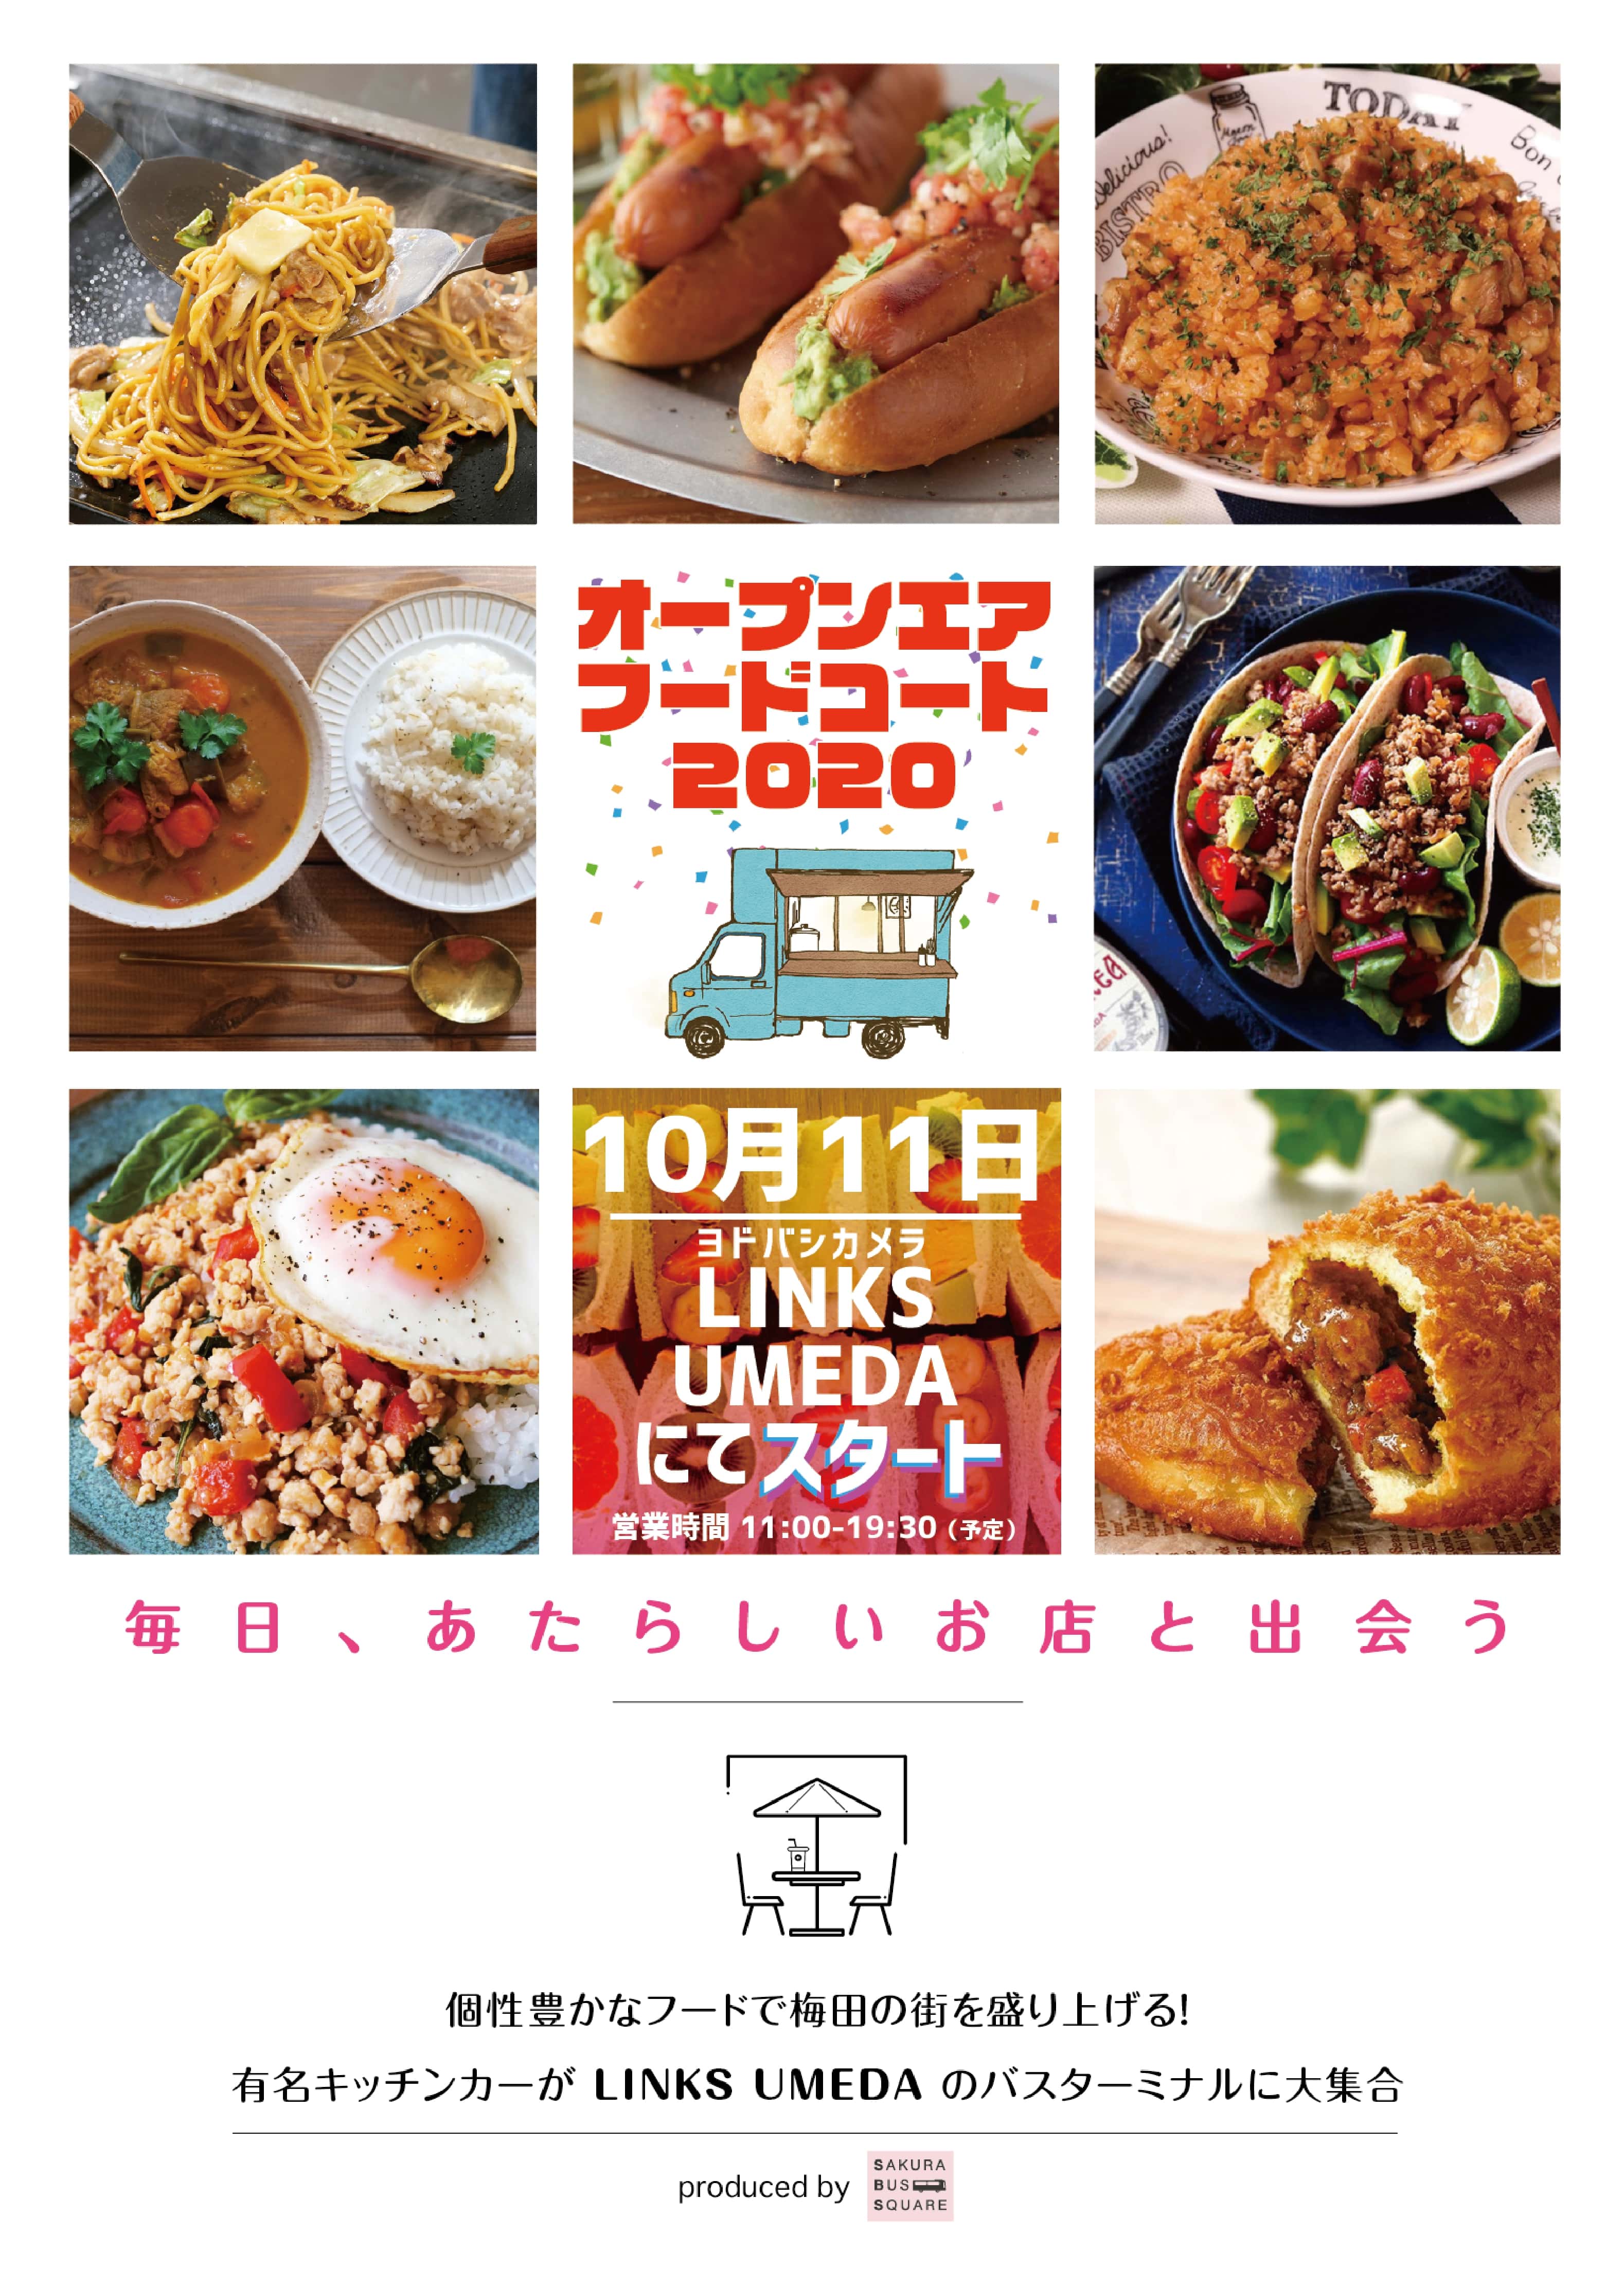 個性豊かなフードで梅田の街を盛り上げる 有名キッチンカーが ヨドバシカメラ Links Umeda のバスターミナルに大集合 Prでっせ